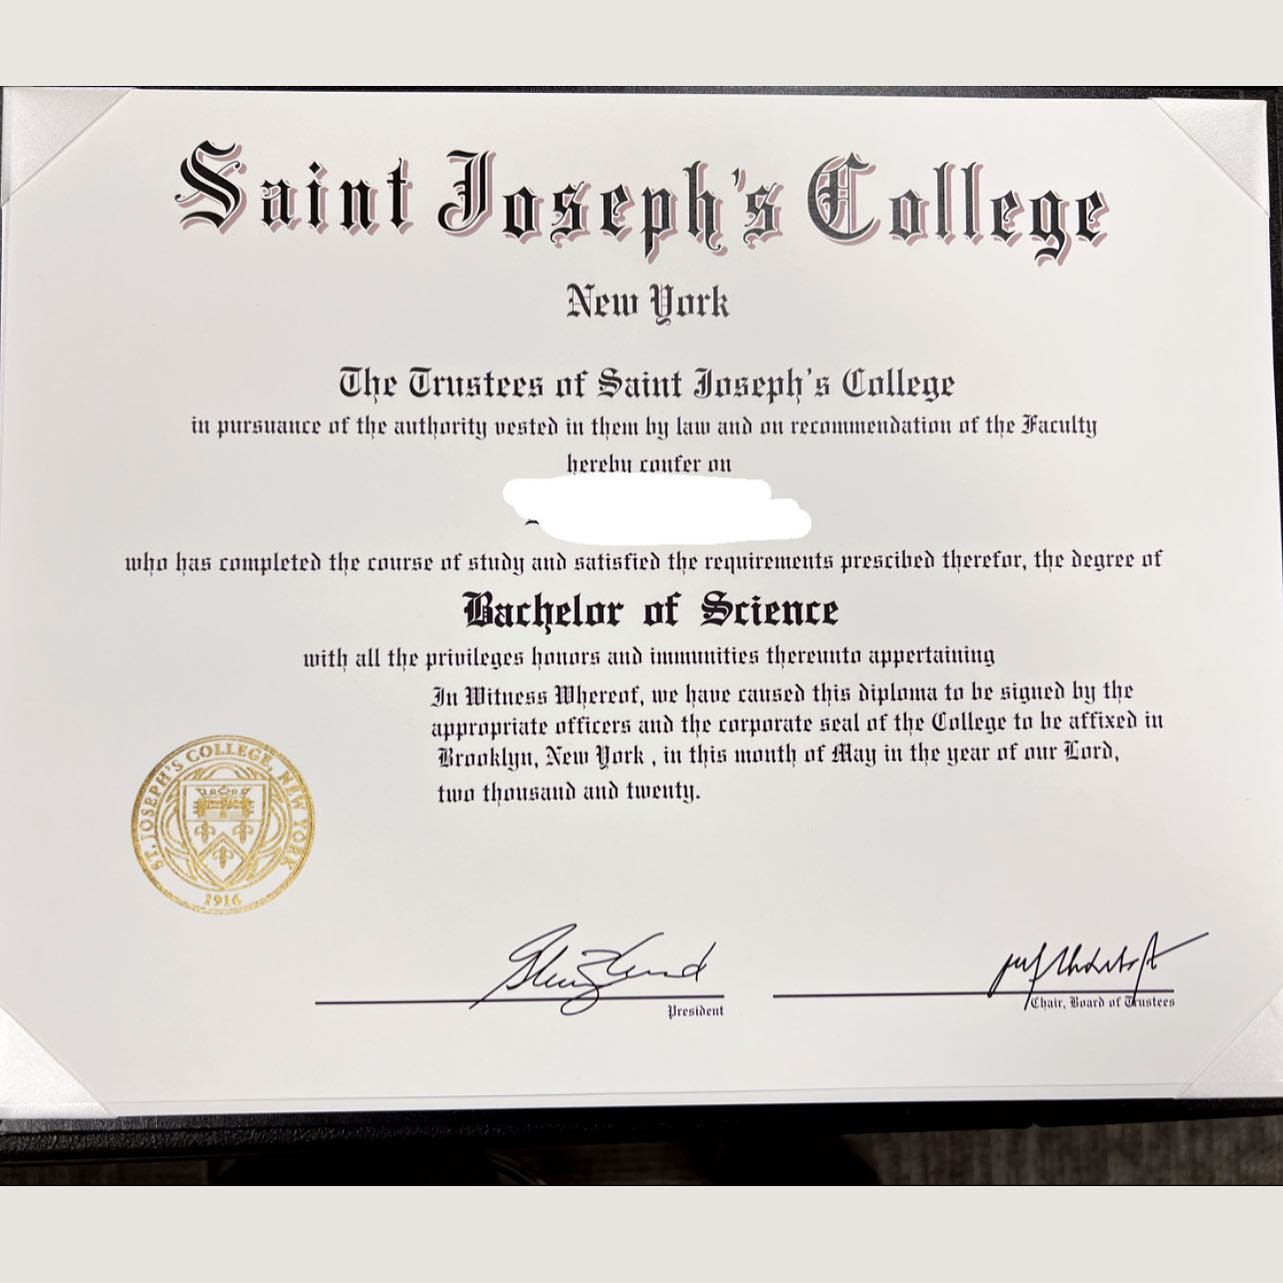 Paper Samples - Realistic Diplomas